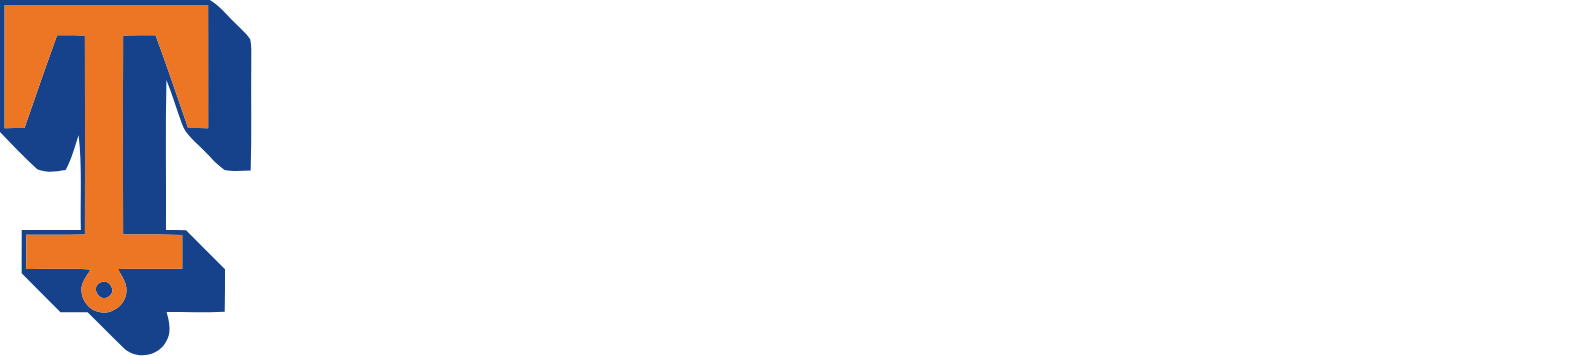 Tidewater Logo groß für dunkle Hintergründe (transparentes PNG)